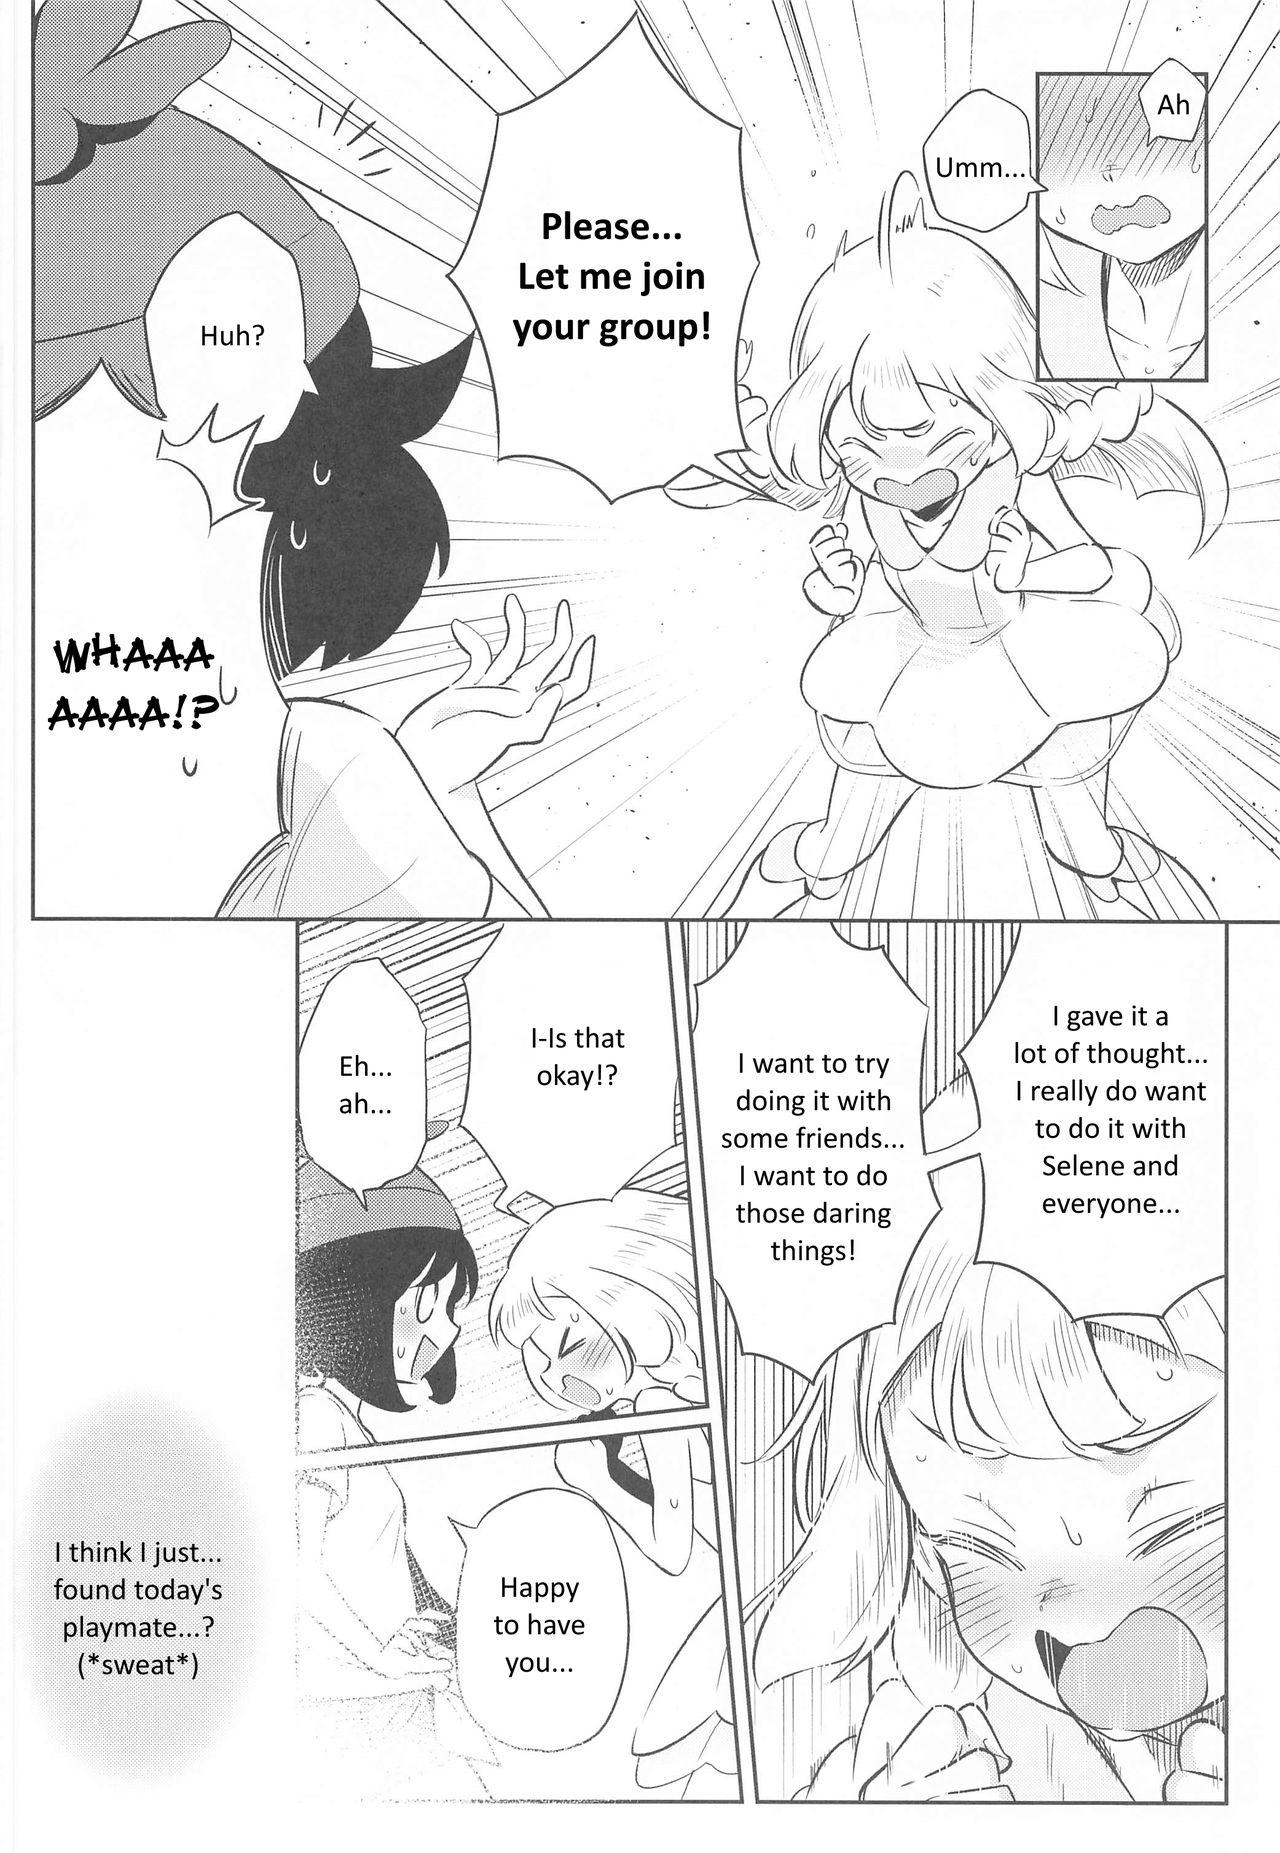 Sensual Onnanoko-tachi no Himitsu no Bouken 2 - Pokemon | pocket monsters Hooker - Page 6